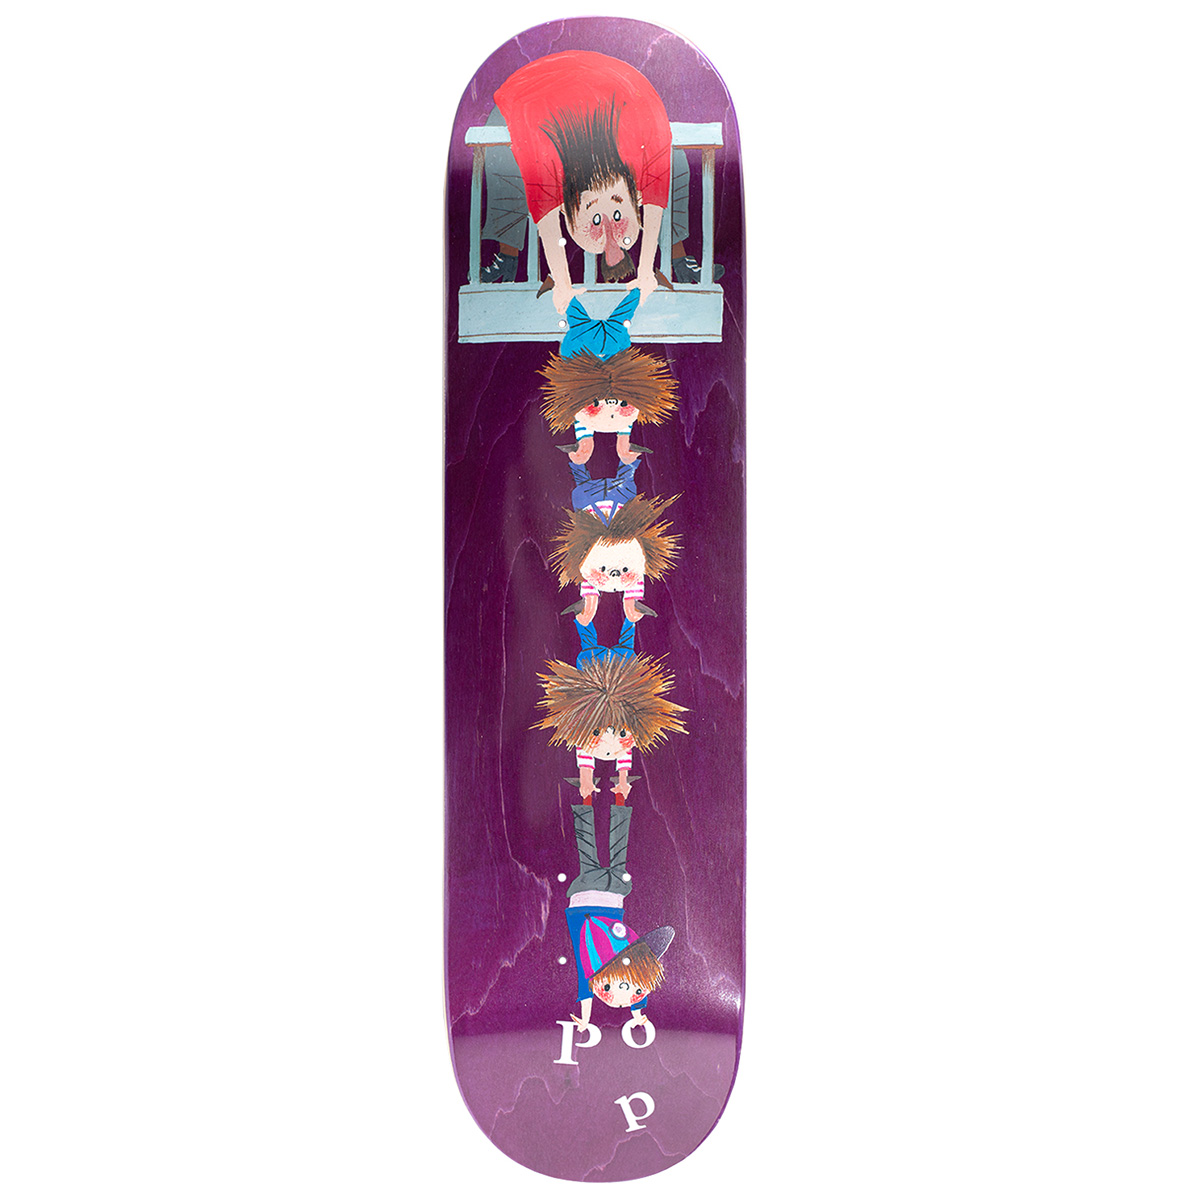 POP Fiep Skateboard Deck 7.75